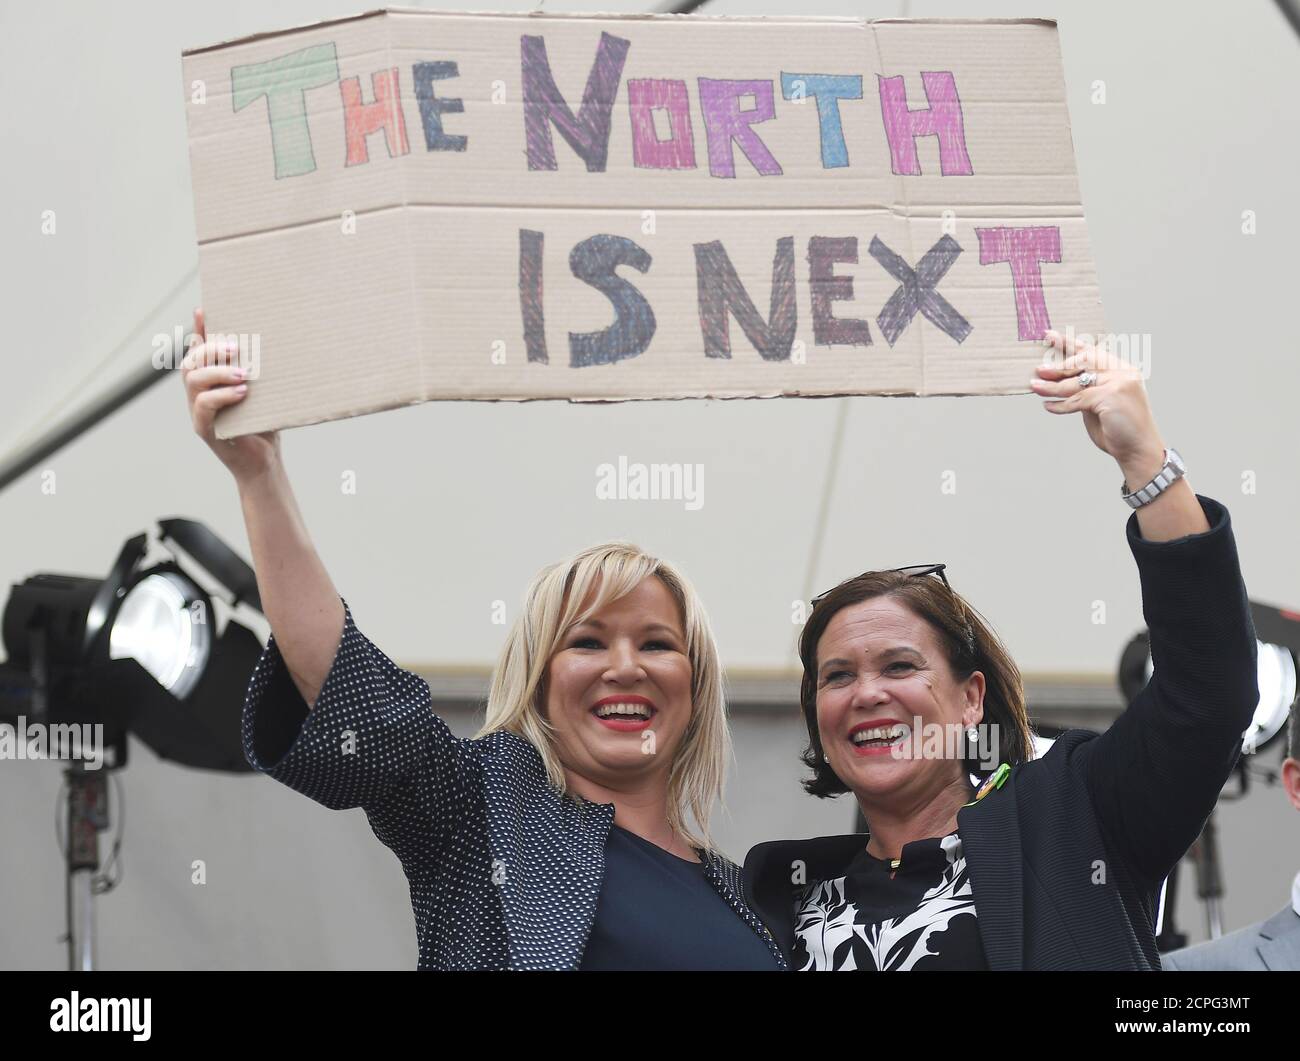 La líder de Sinn Fein, Mary Lou McDonald, y Michelle o'Neill, líder de Sinn Fein en Irlanda del Norte, sostienen un cartel mientras celebran el resultado del referéndum de ayer sobre la liberalización de la ley del aborto, en Dublín, Irlanda, el 26 de mayo de 2018. REUTERS/Clodagh Kilcoyne Foto de stock